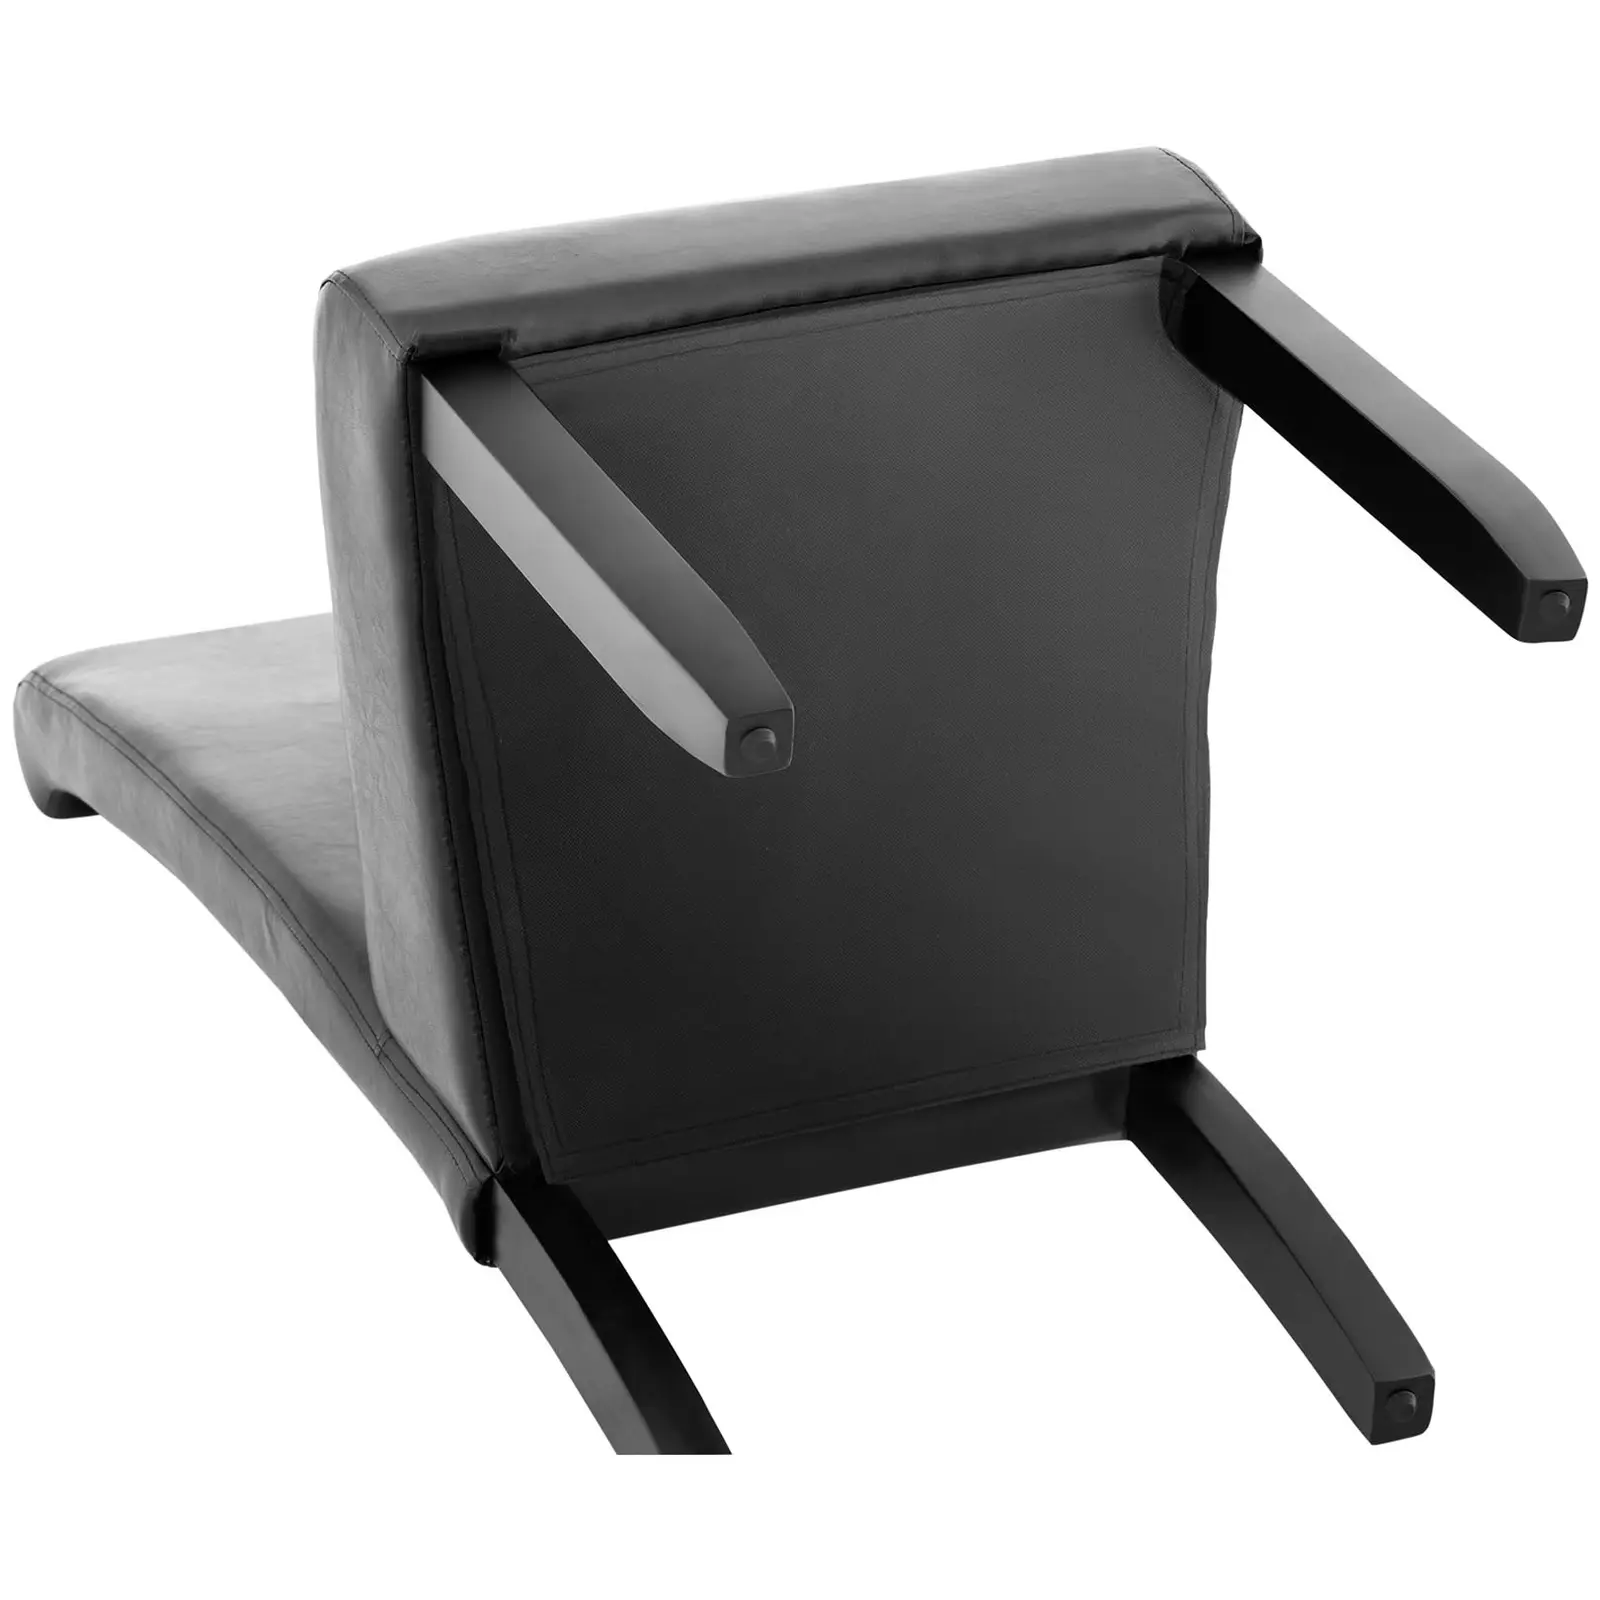 Chaise rembourrée - Lot de 2 - 180 kg max. - Surface d'assise de 44,5 x 44 cm - Coloris noir